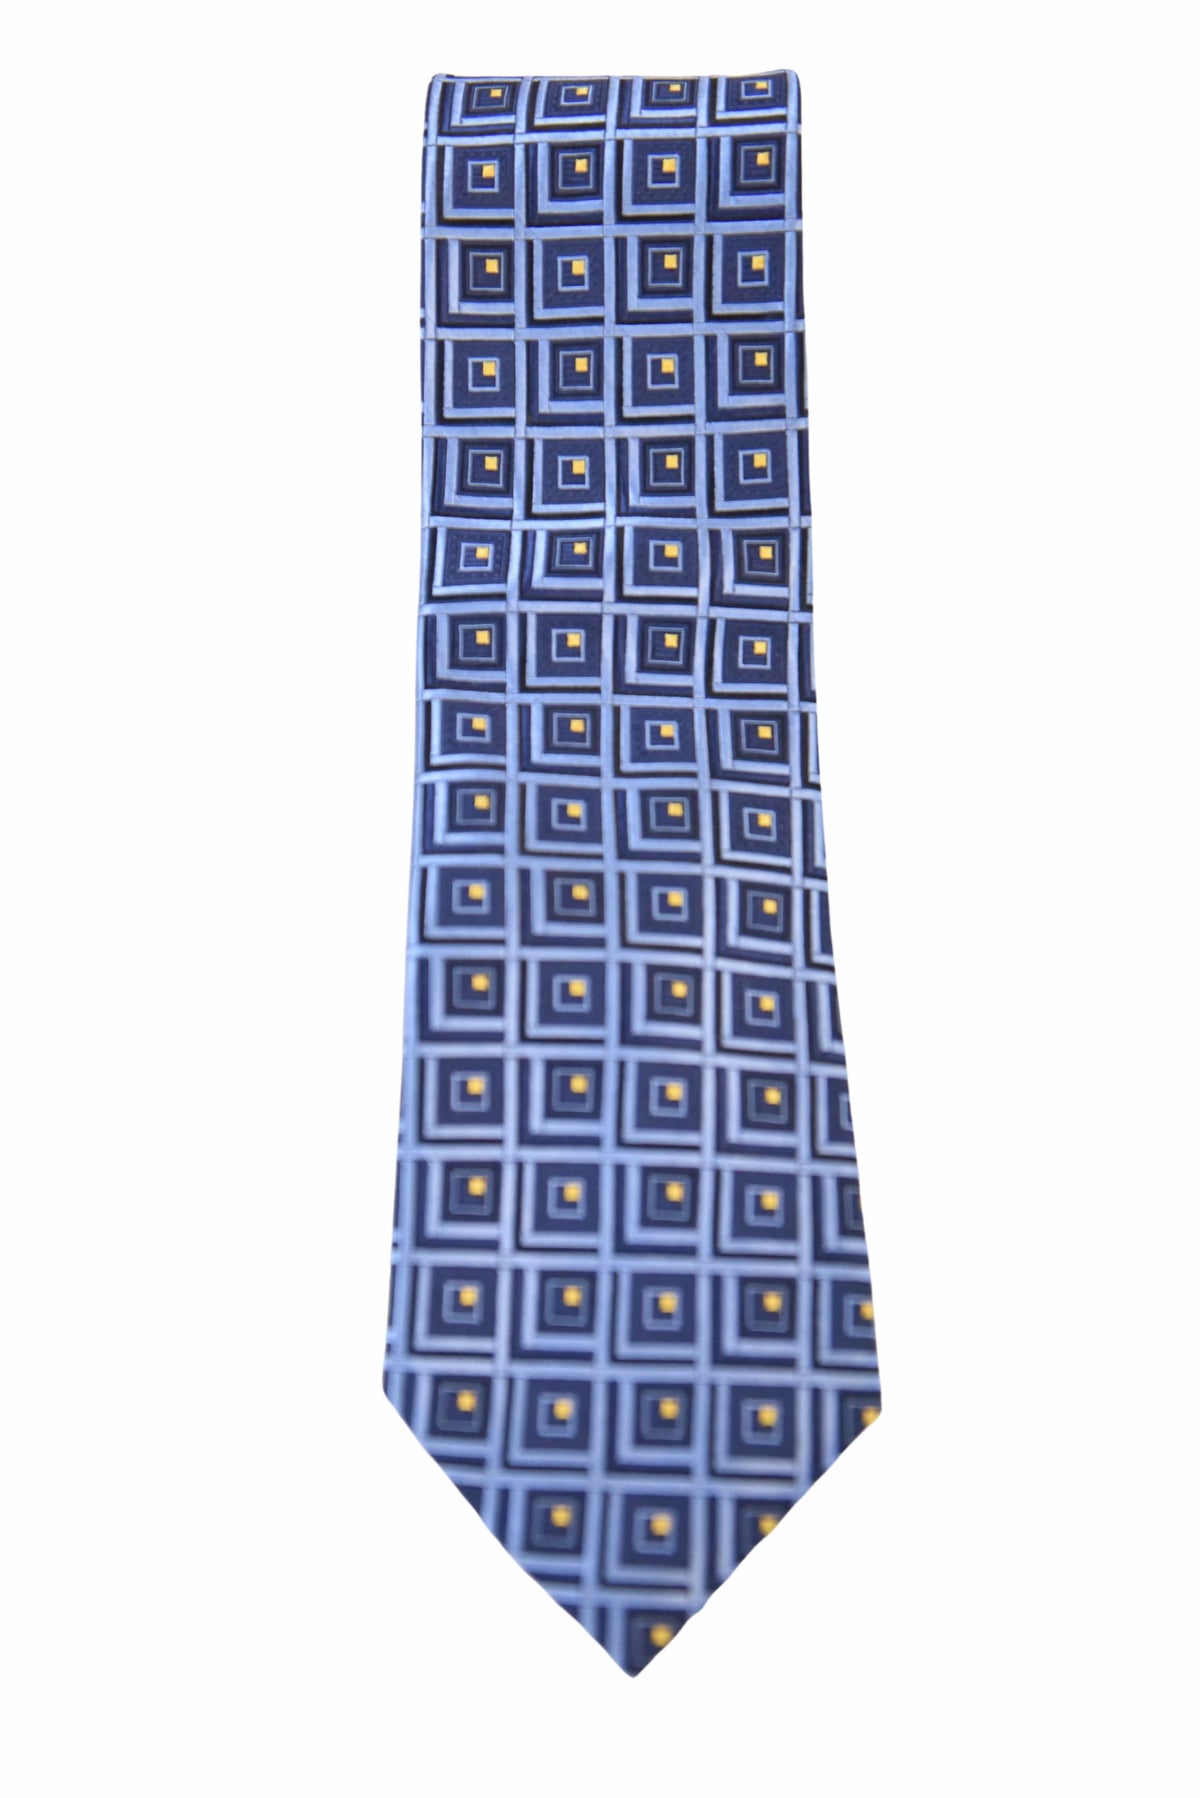 The Suit Depot Blue Medallion Arthur Black Premium Silk Tie